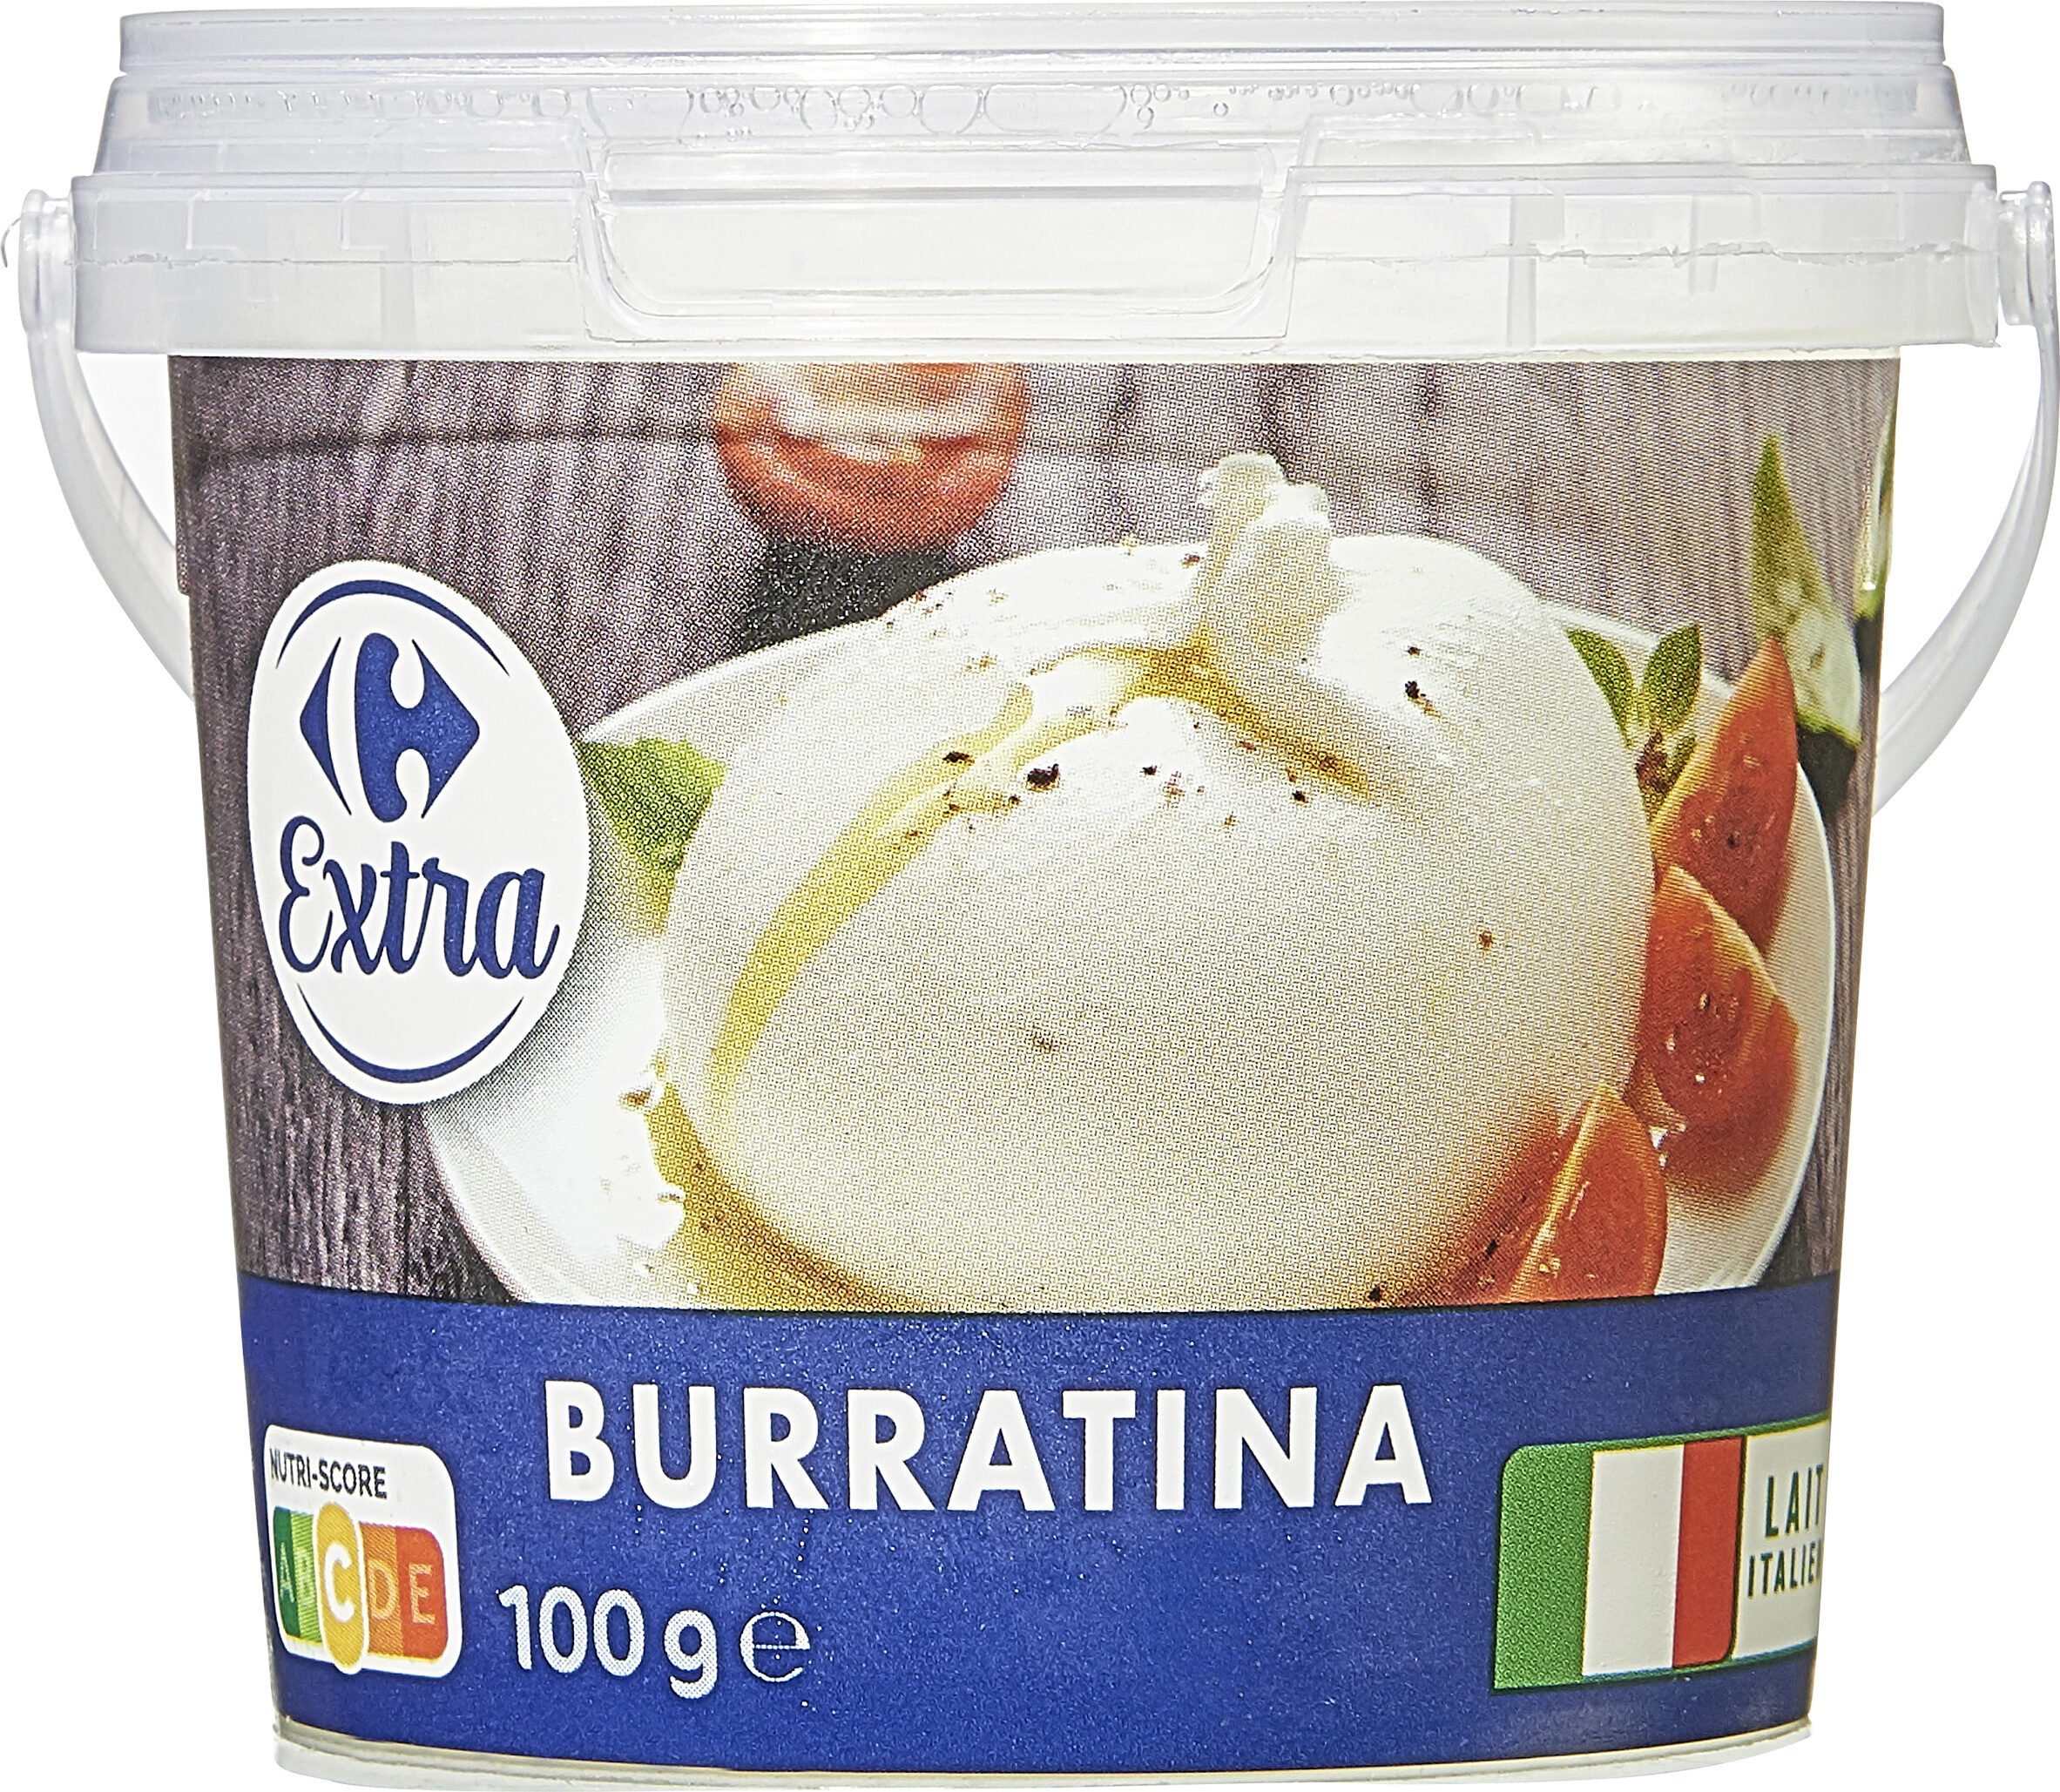 Burratina - Product - fr